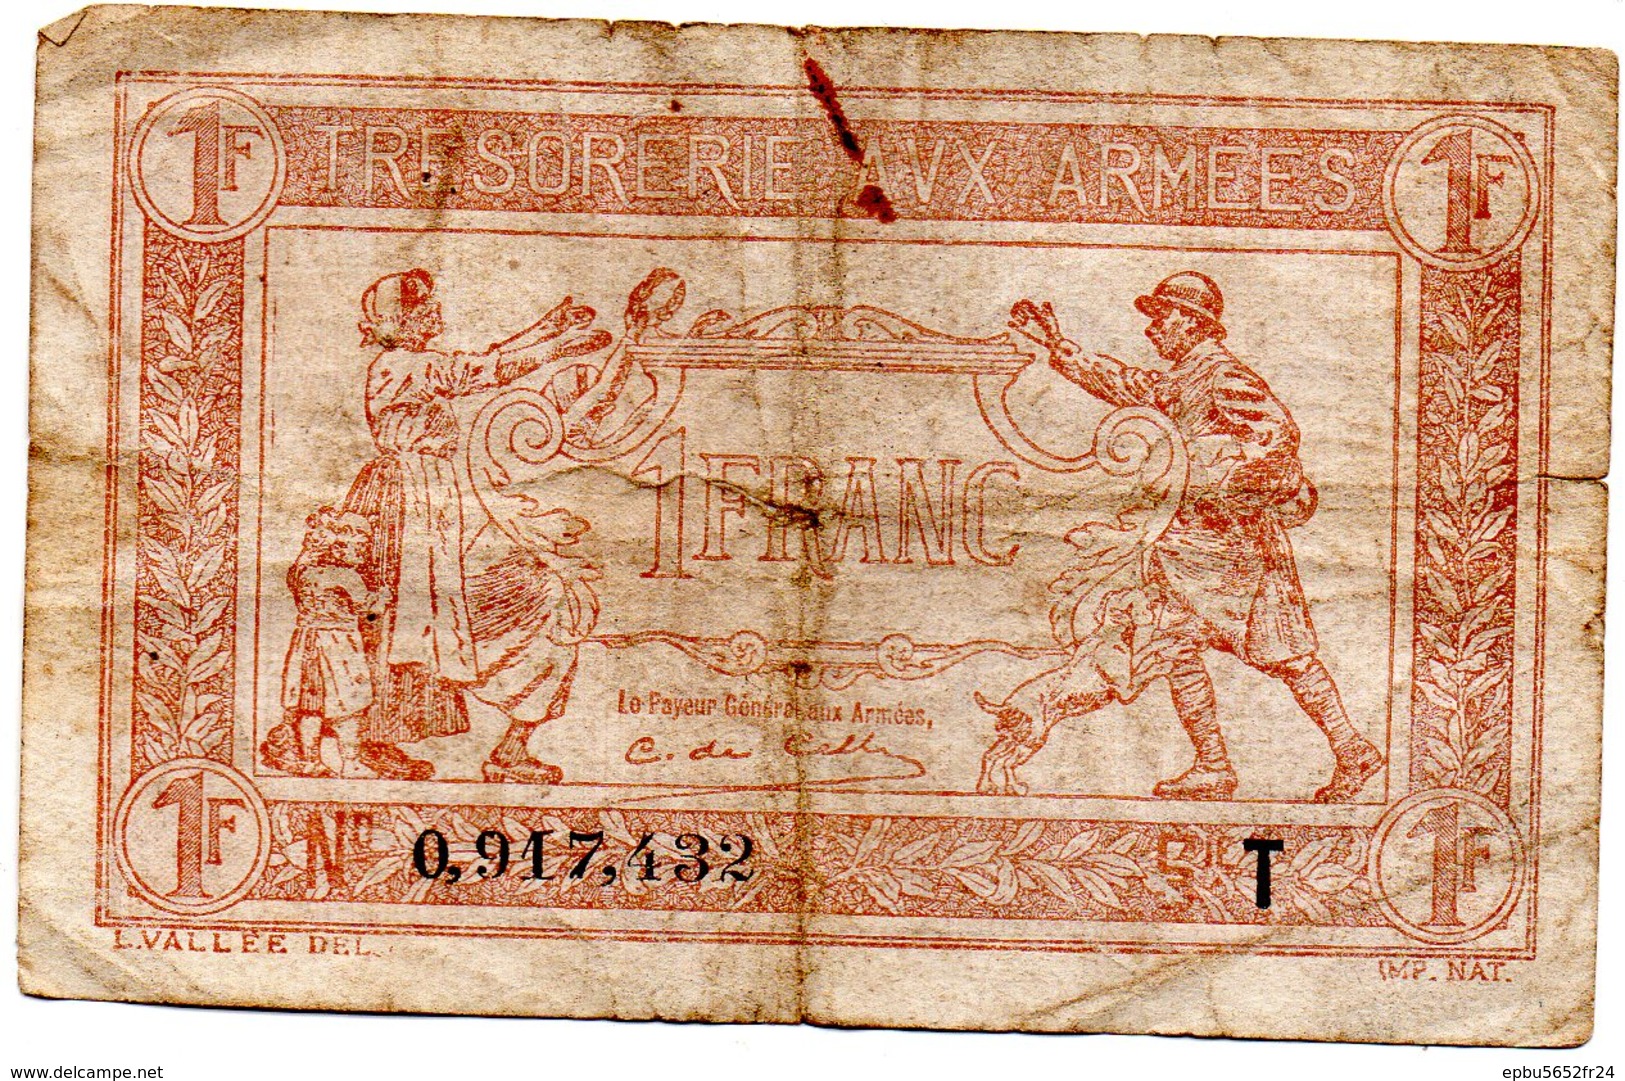 Trésorerie Aux Armées Billet De 1 Francs  Série T  N° 0917432 - 1917-1919 Army Treasury